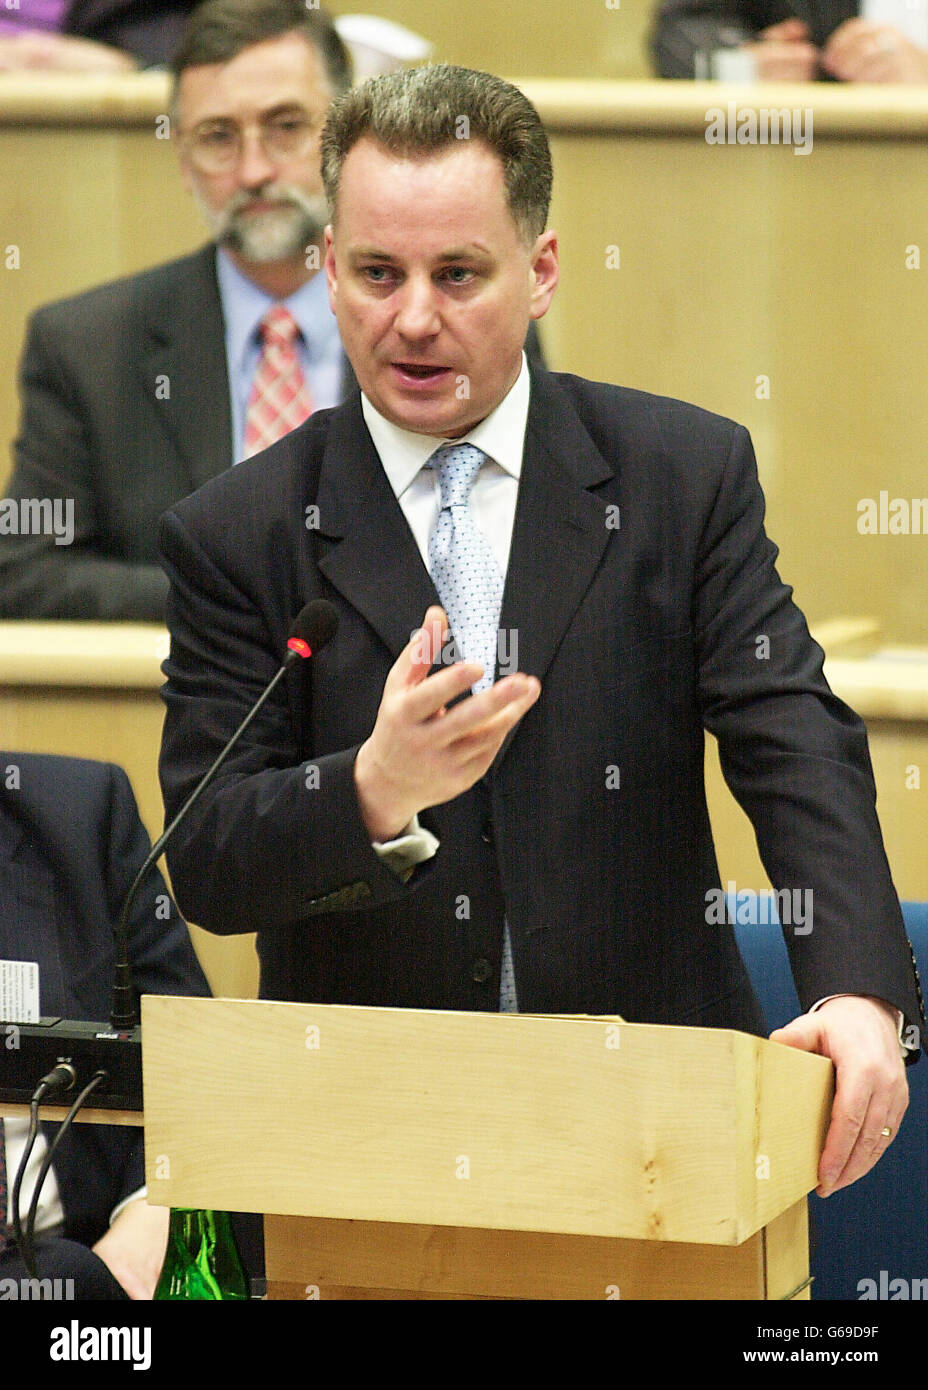 Primer Ministro Jack McConnell durante el turno de preguntas, hablando sobre las Fuerzas Escocesas desplegadas en el Medio Oriente. Foto de stock